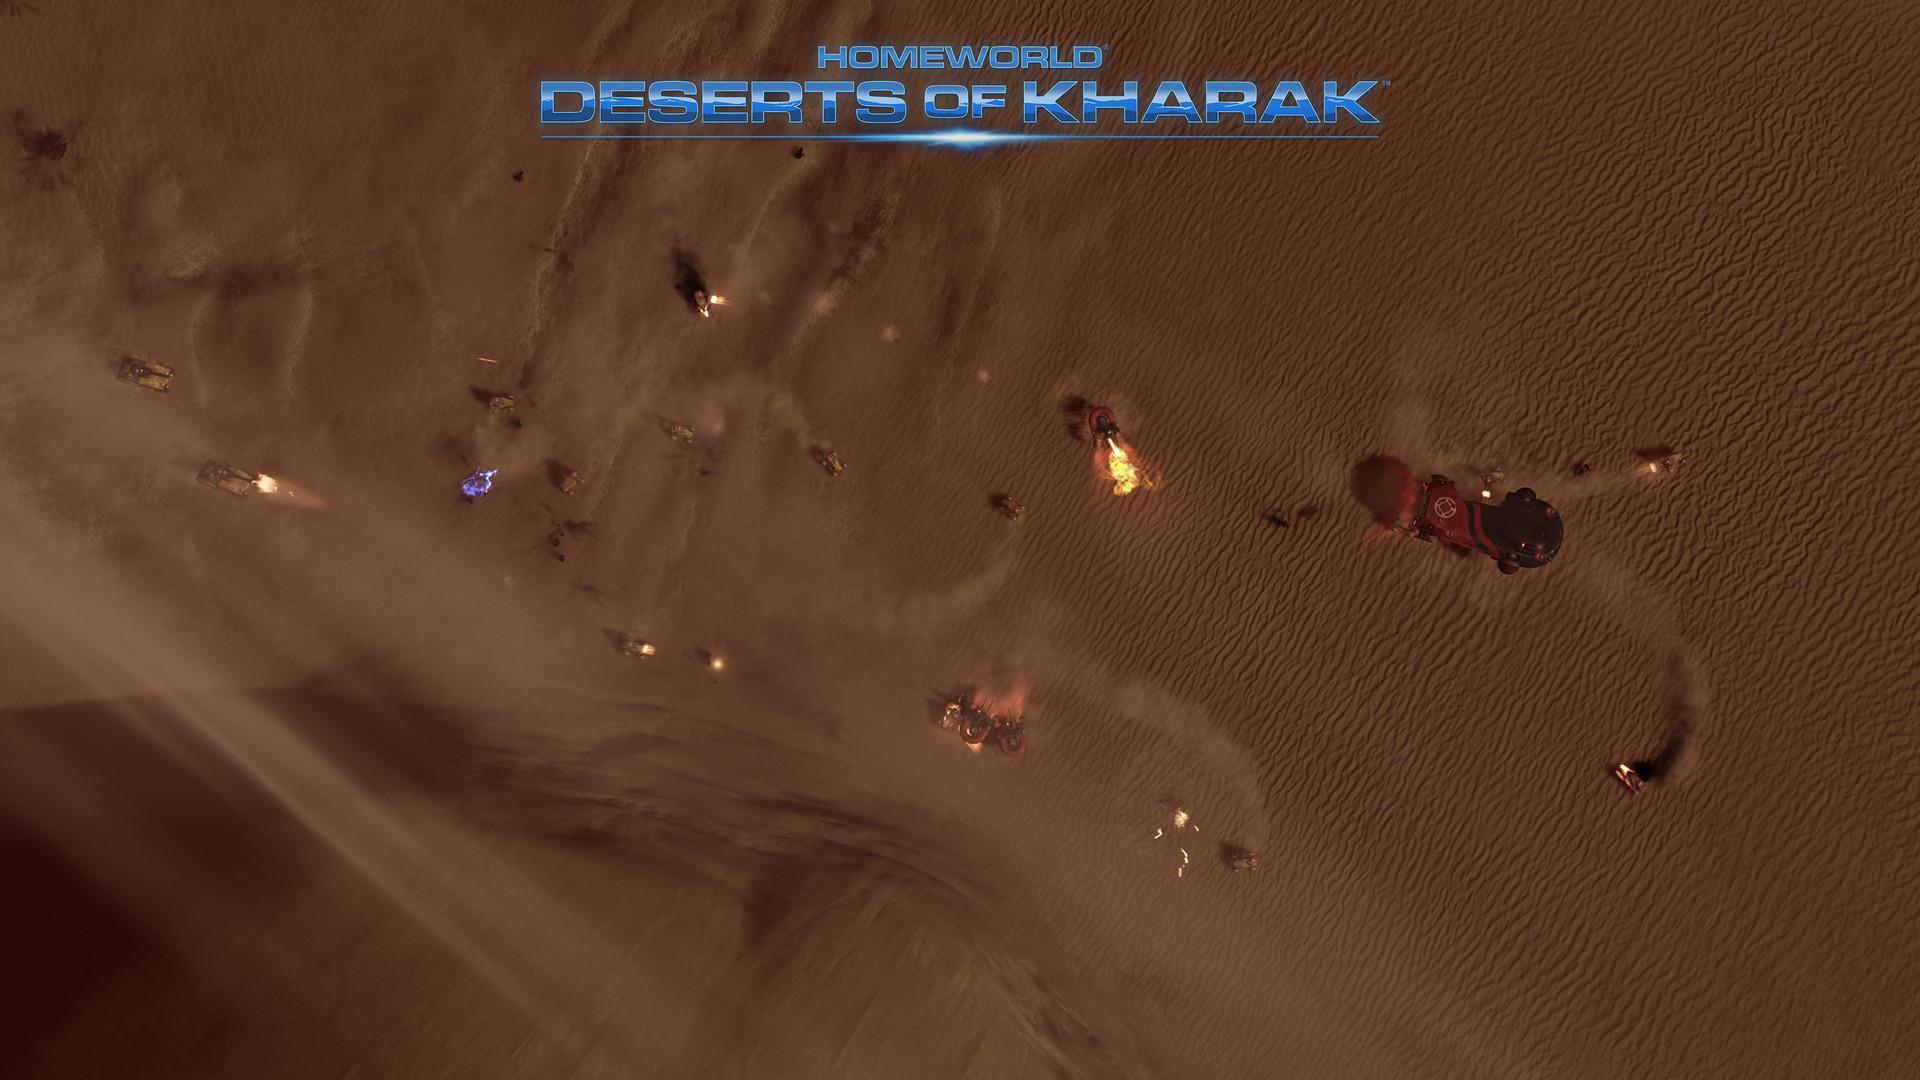 Screenshot №9 from game Homeworld: Deserts of Kharak